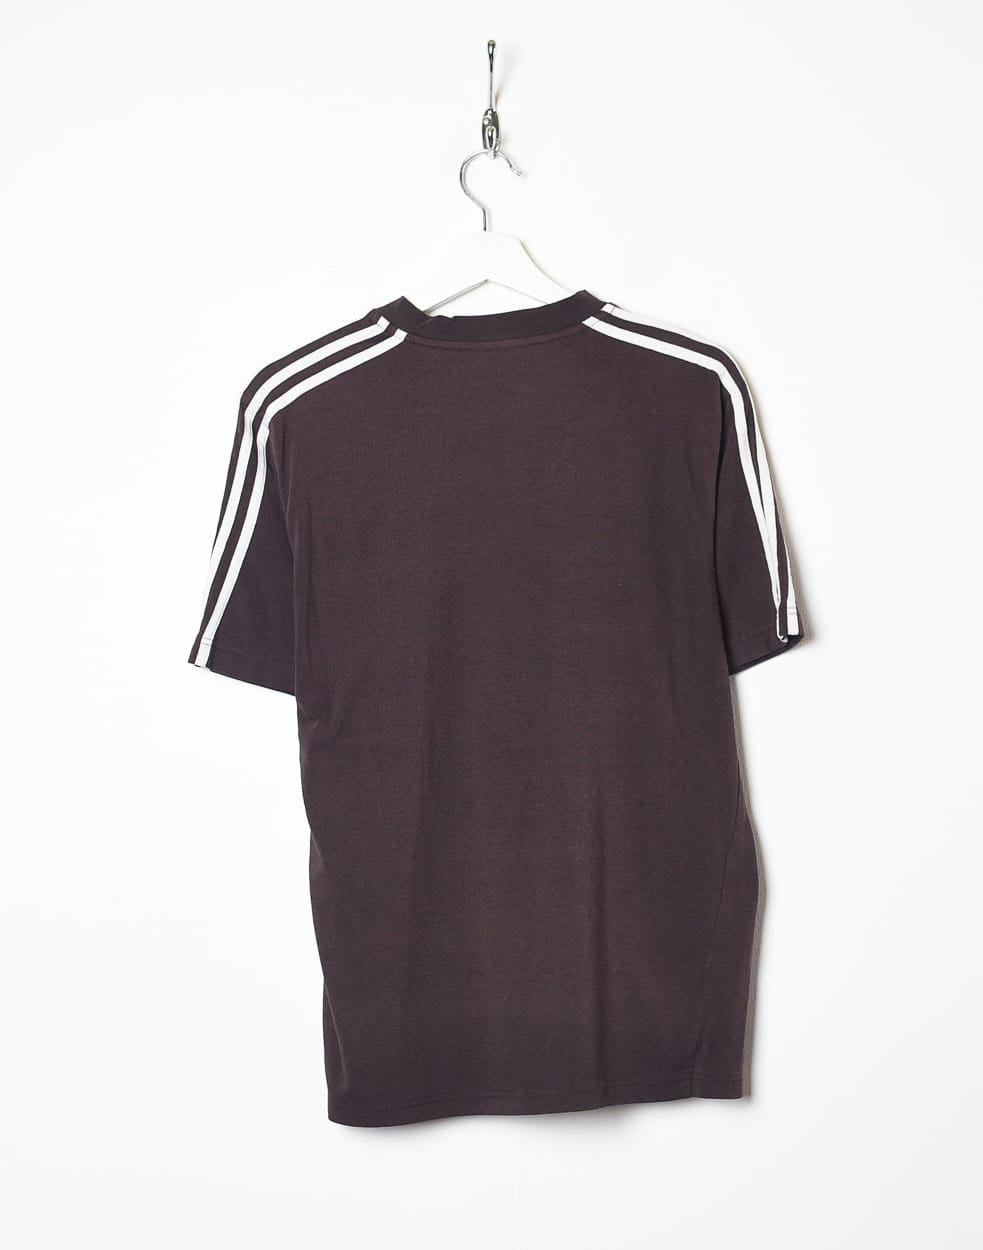 Brown Adidas T-Shirt - Small